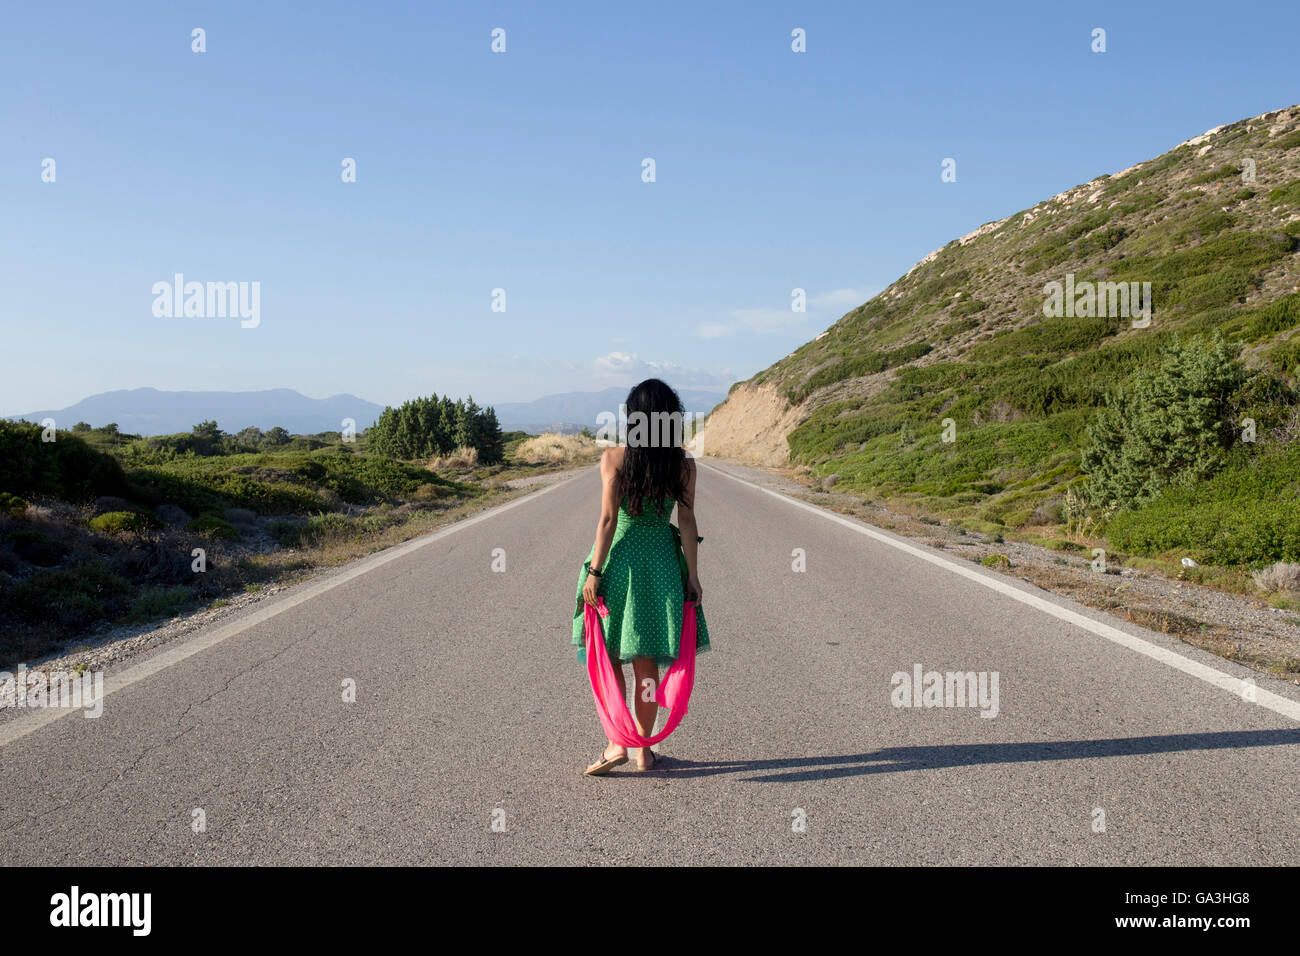 Una mujer que está completamente solo en una carretera. La isla de Rodas(Rodos). Foto de stock